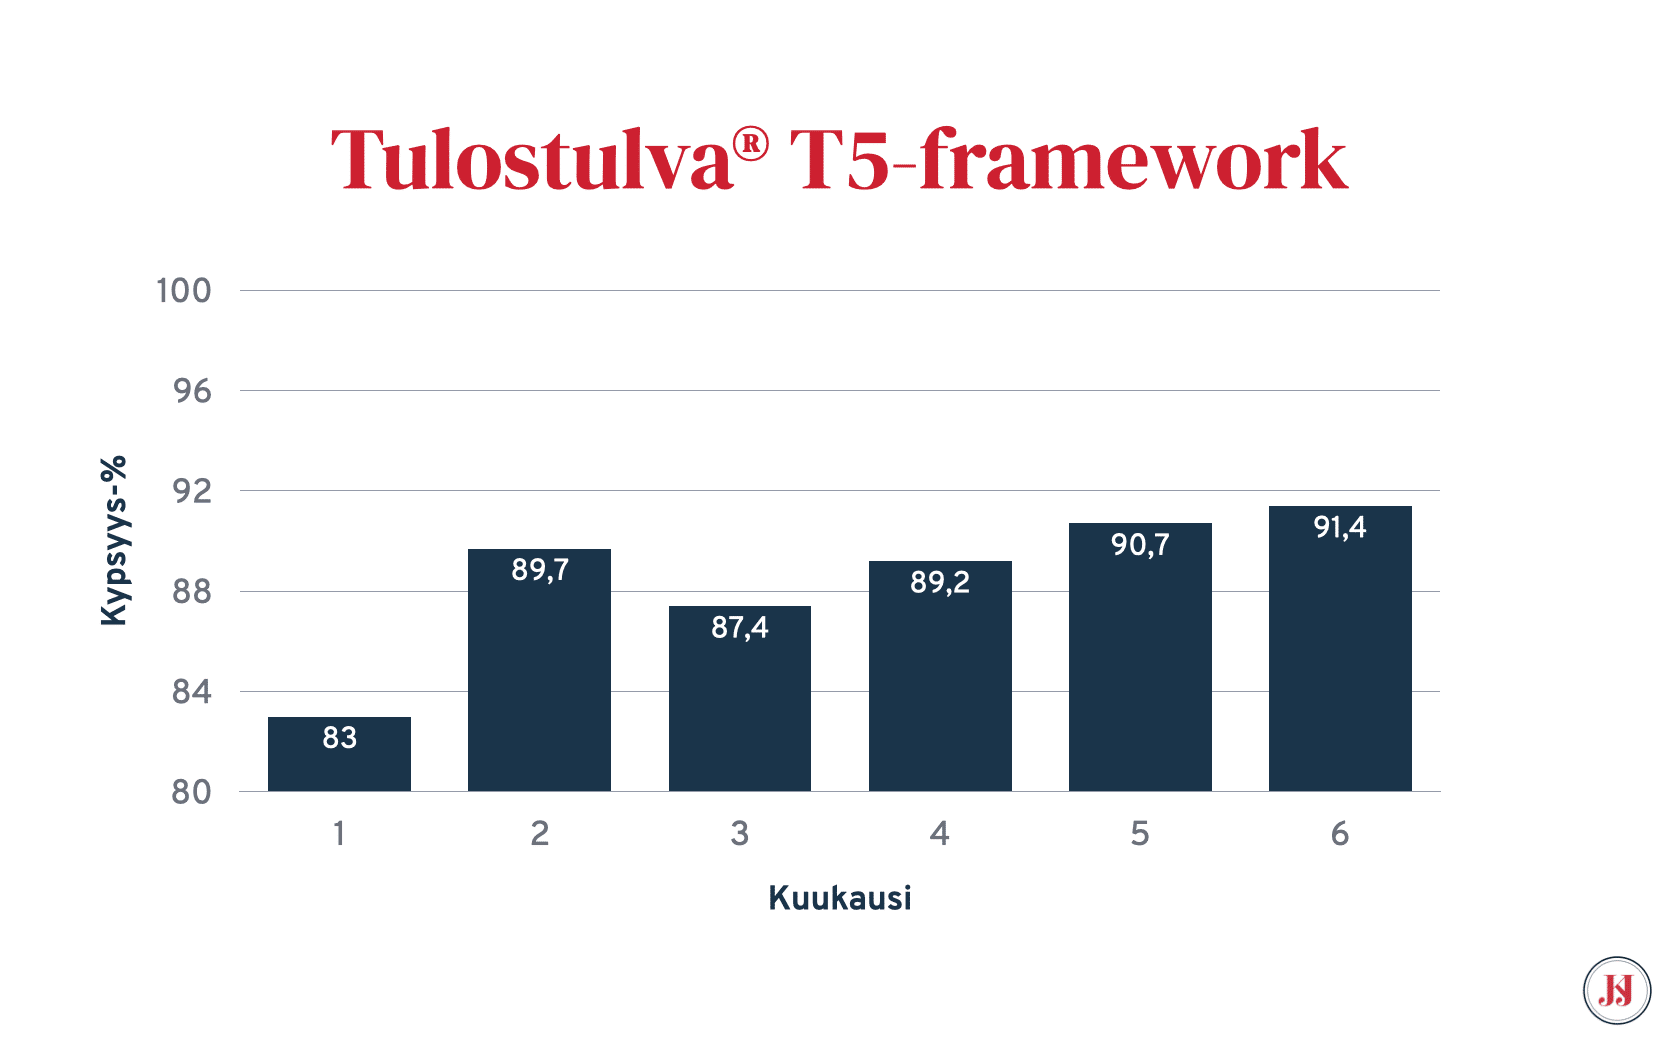 Tulostulva® T5 framework tulokset